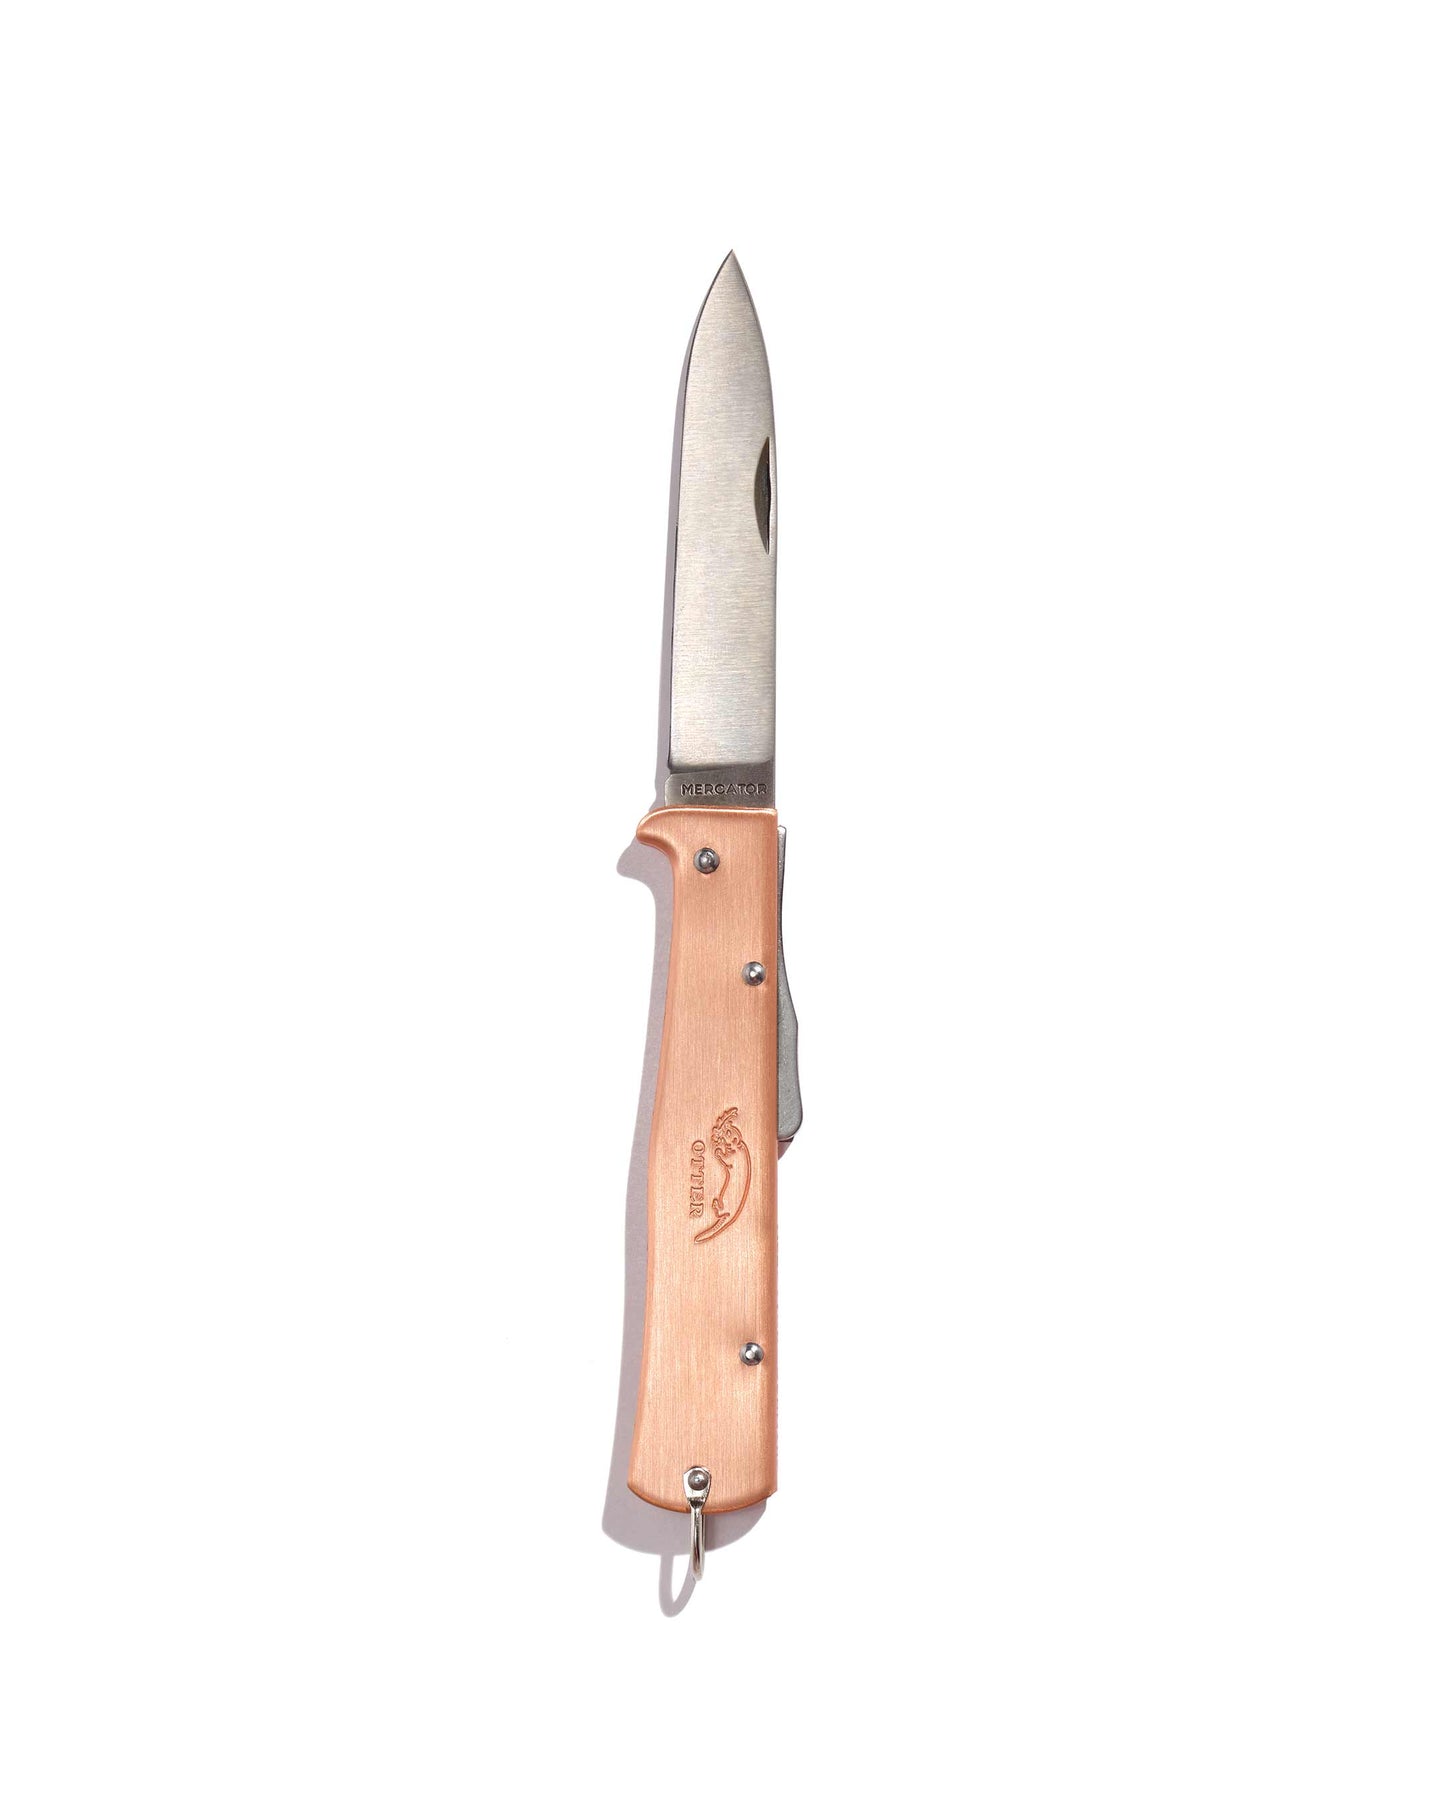 Mercator copper folding knife